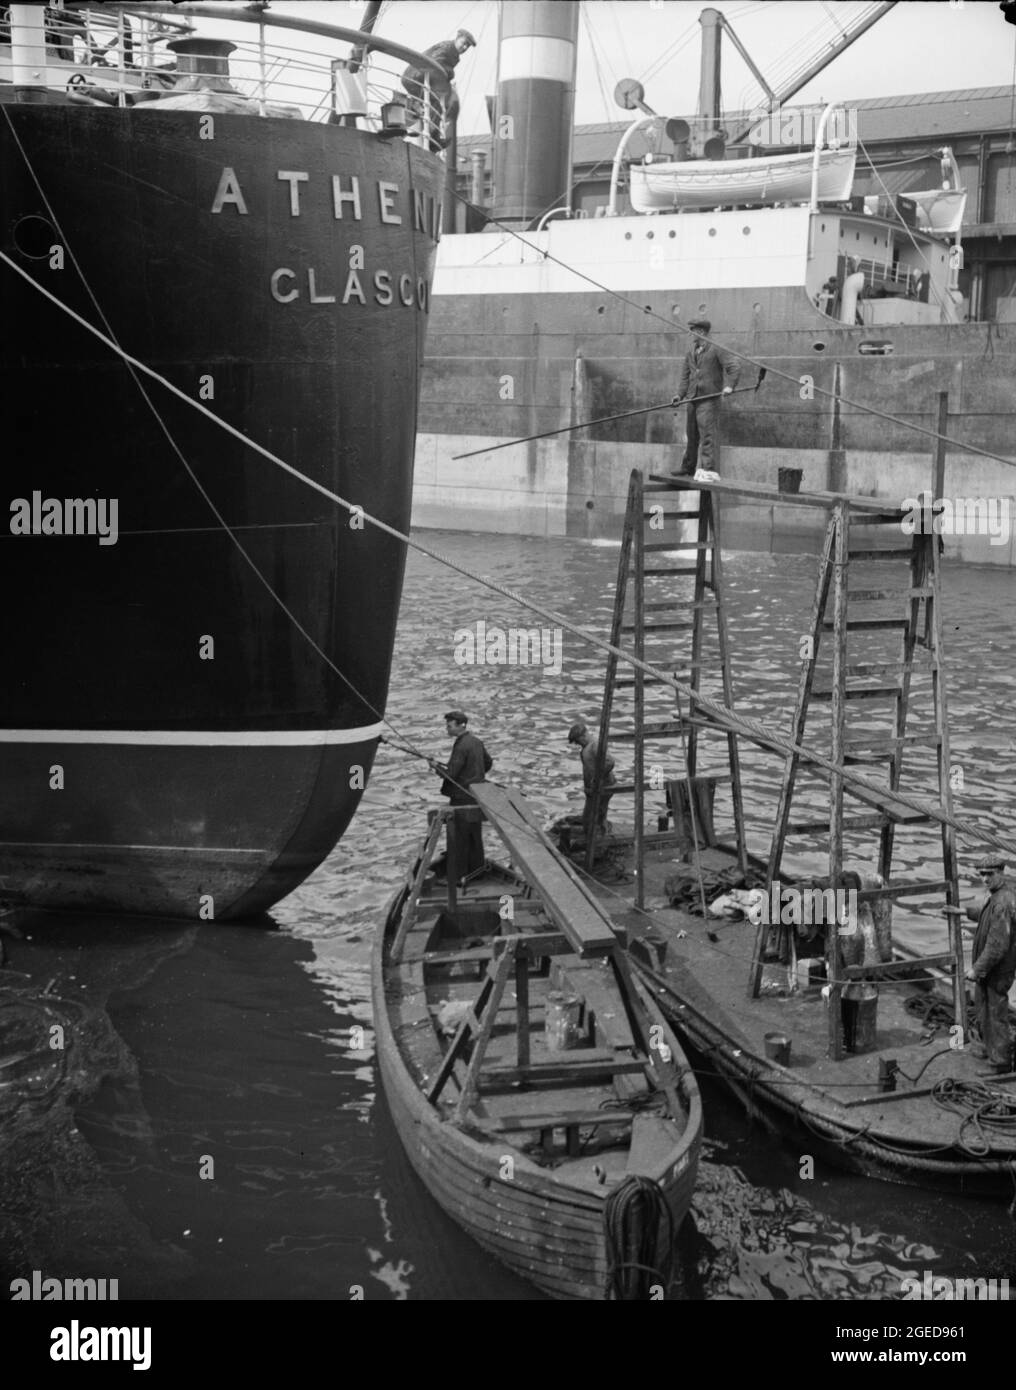 GLASGOW, SCHOTTLAND, Vereinigtes Königreich - 1937 - Glasgow, Schottland. Das Heck der S.S. Athene malen. Dieser Liner war das erste Schiff, das im Zweiten Weltkrieg b versenkt wurde Stockfoto